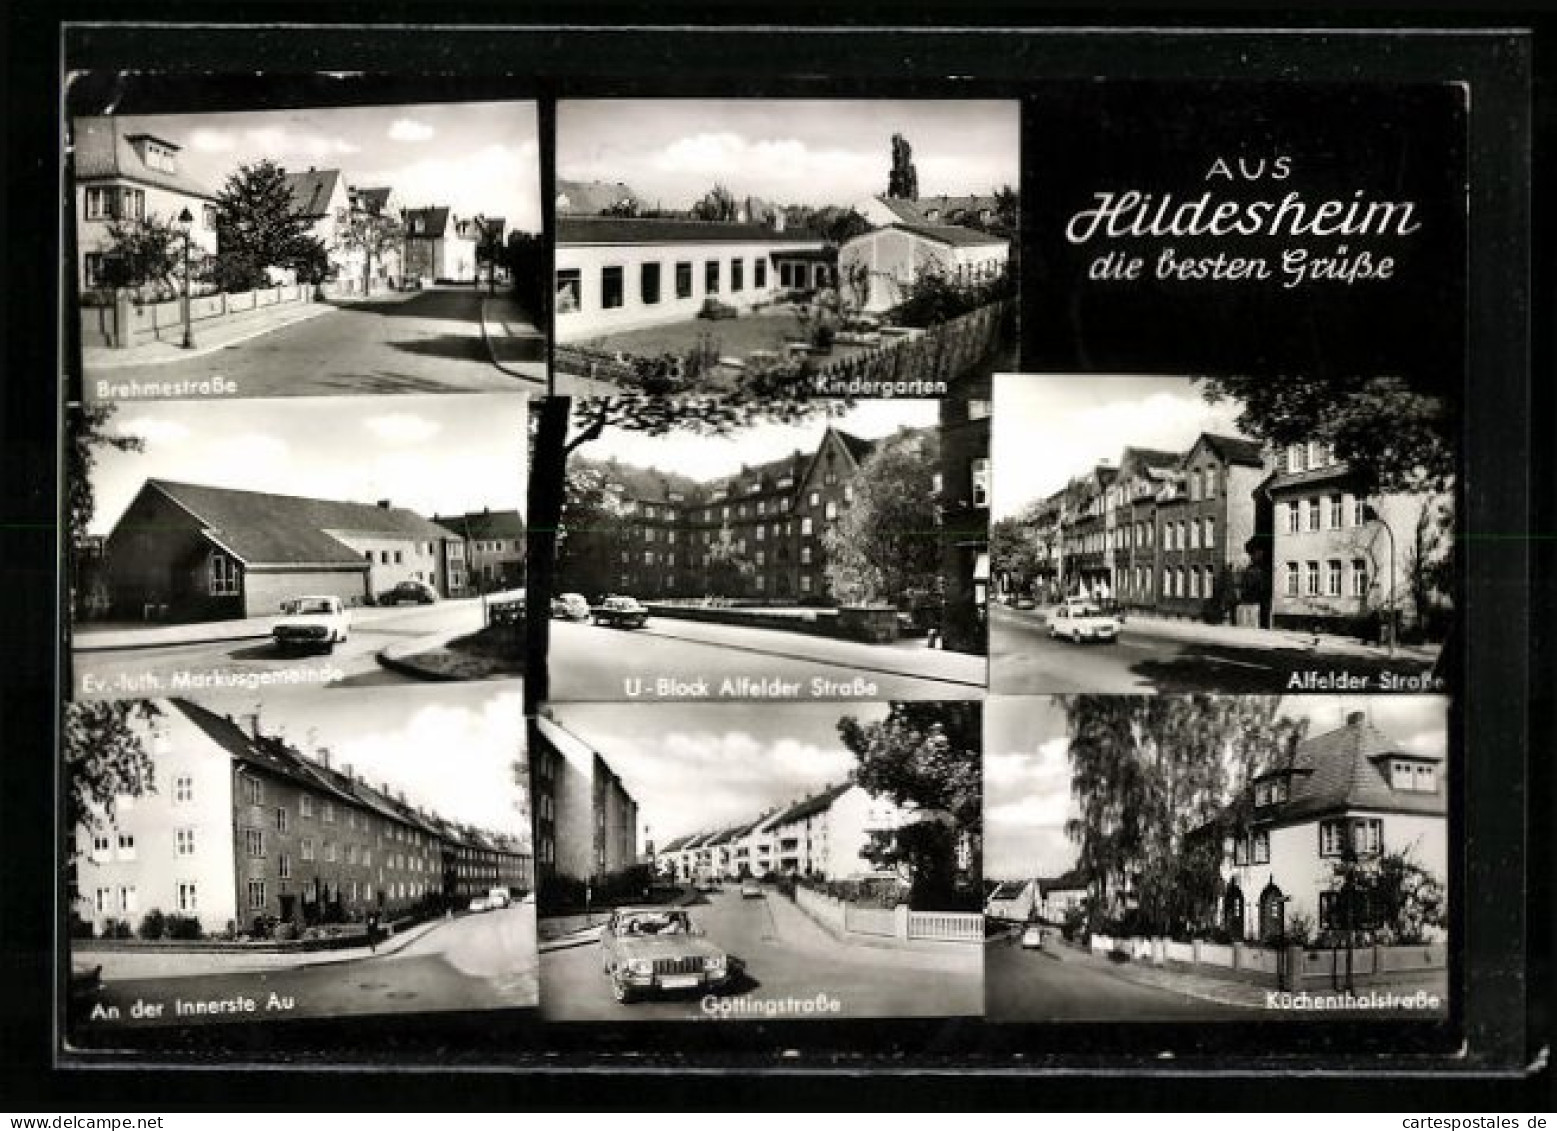 AK Hildesheim, Brehmerstrasse, Göttingstrasse, Küchenthalstrasse  - Hildesheim